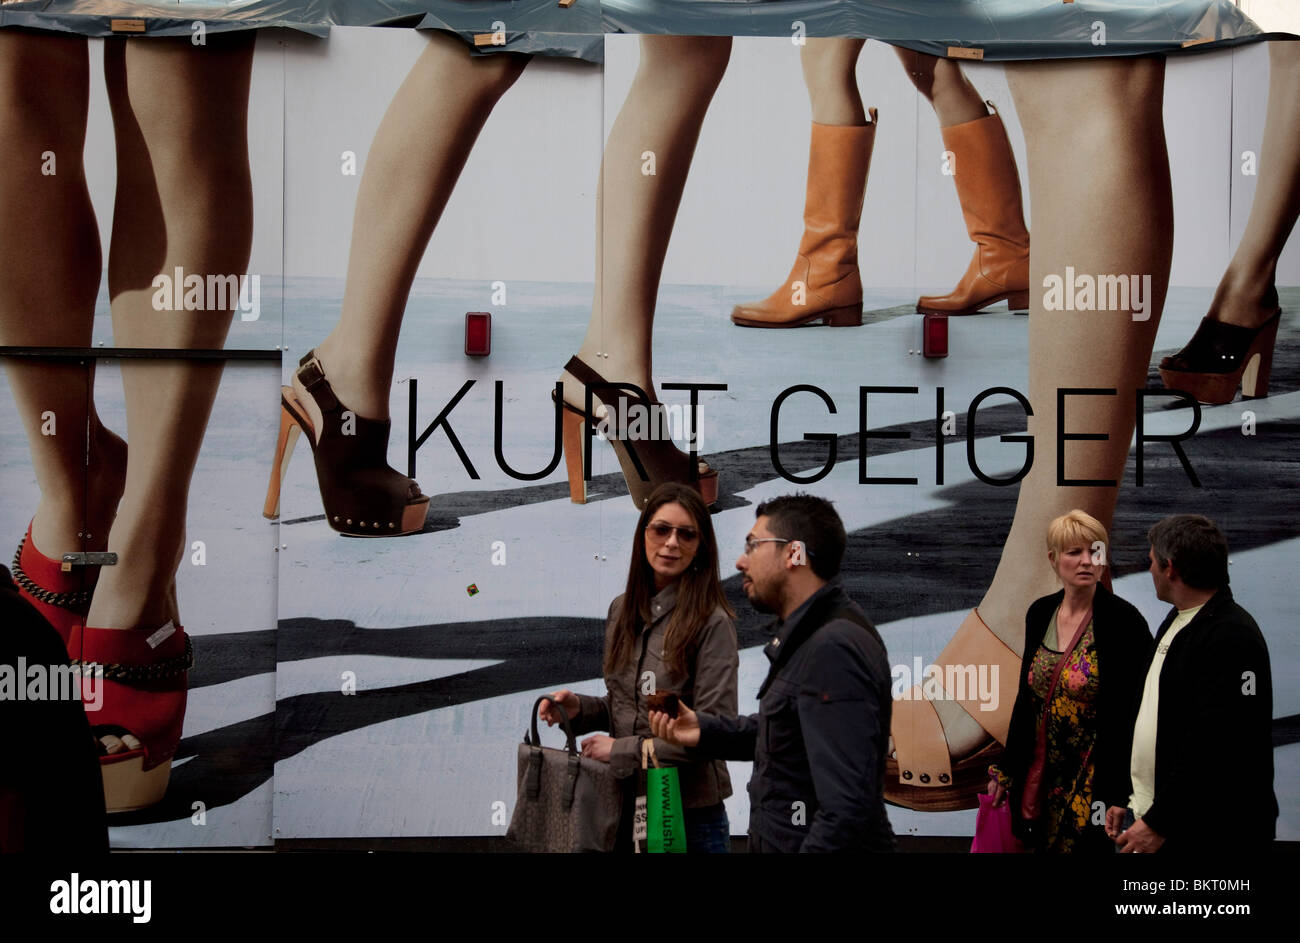 Menschen übergeben eine große Mode-Plakat für Kurt Geiger. Covent Garden im West End von London. Stockfoto